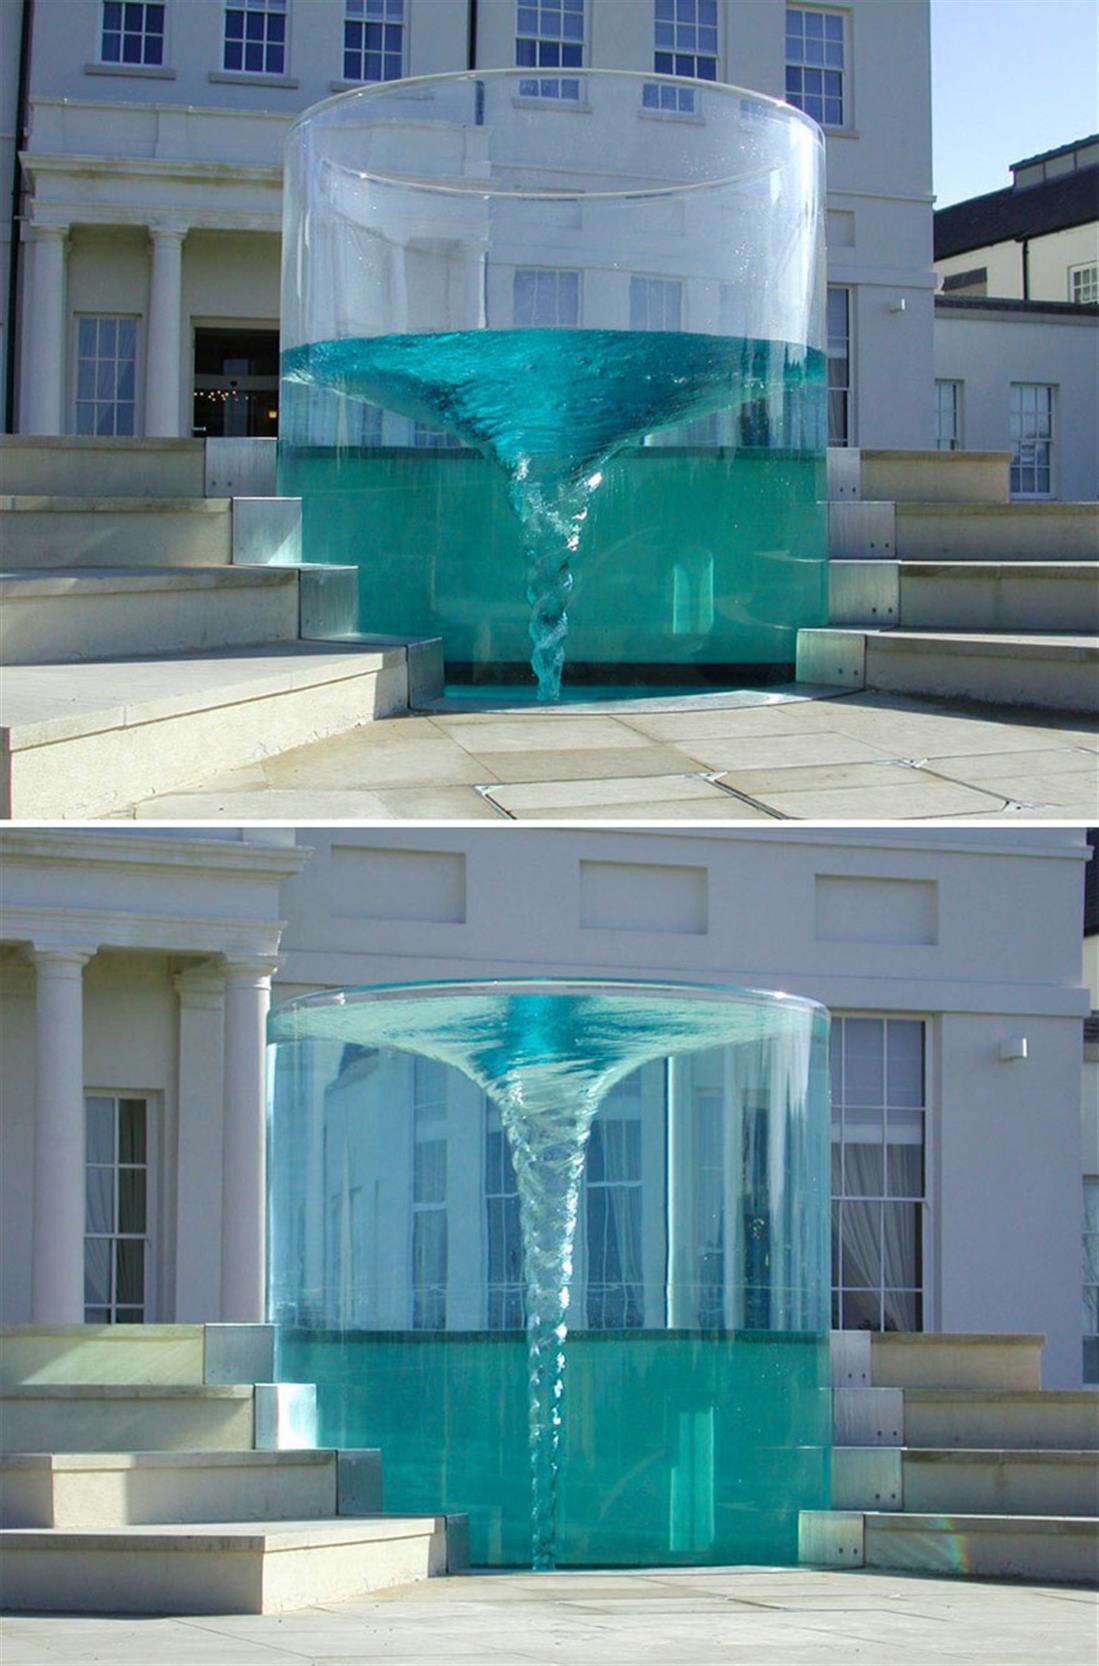 Συντριβάνια - Vortex Fountain Σάντερλαντ, Ηνωμένο Βασίλειο